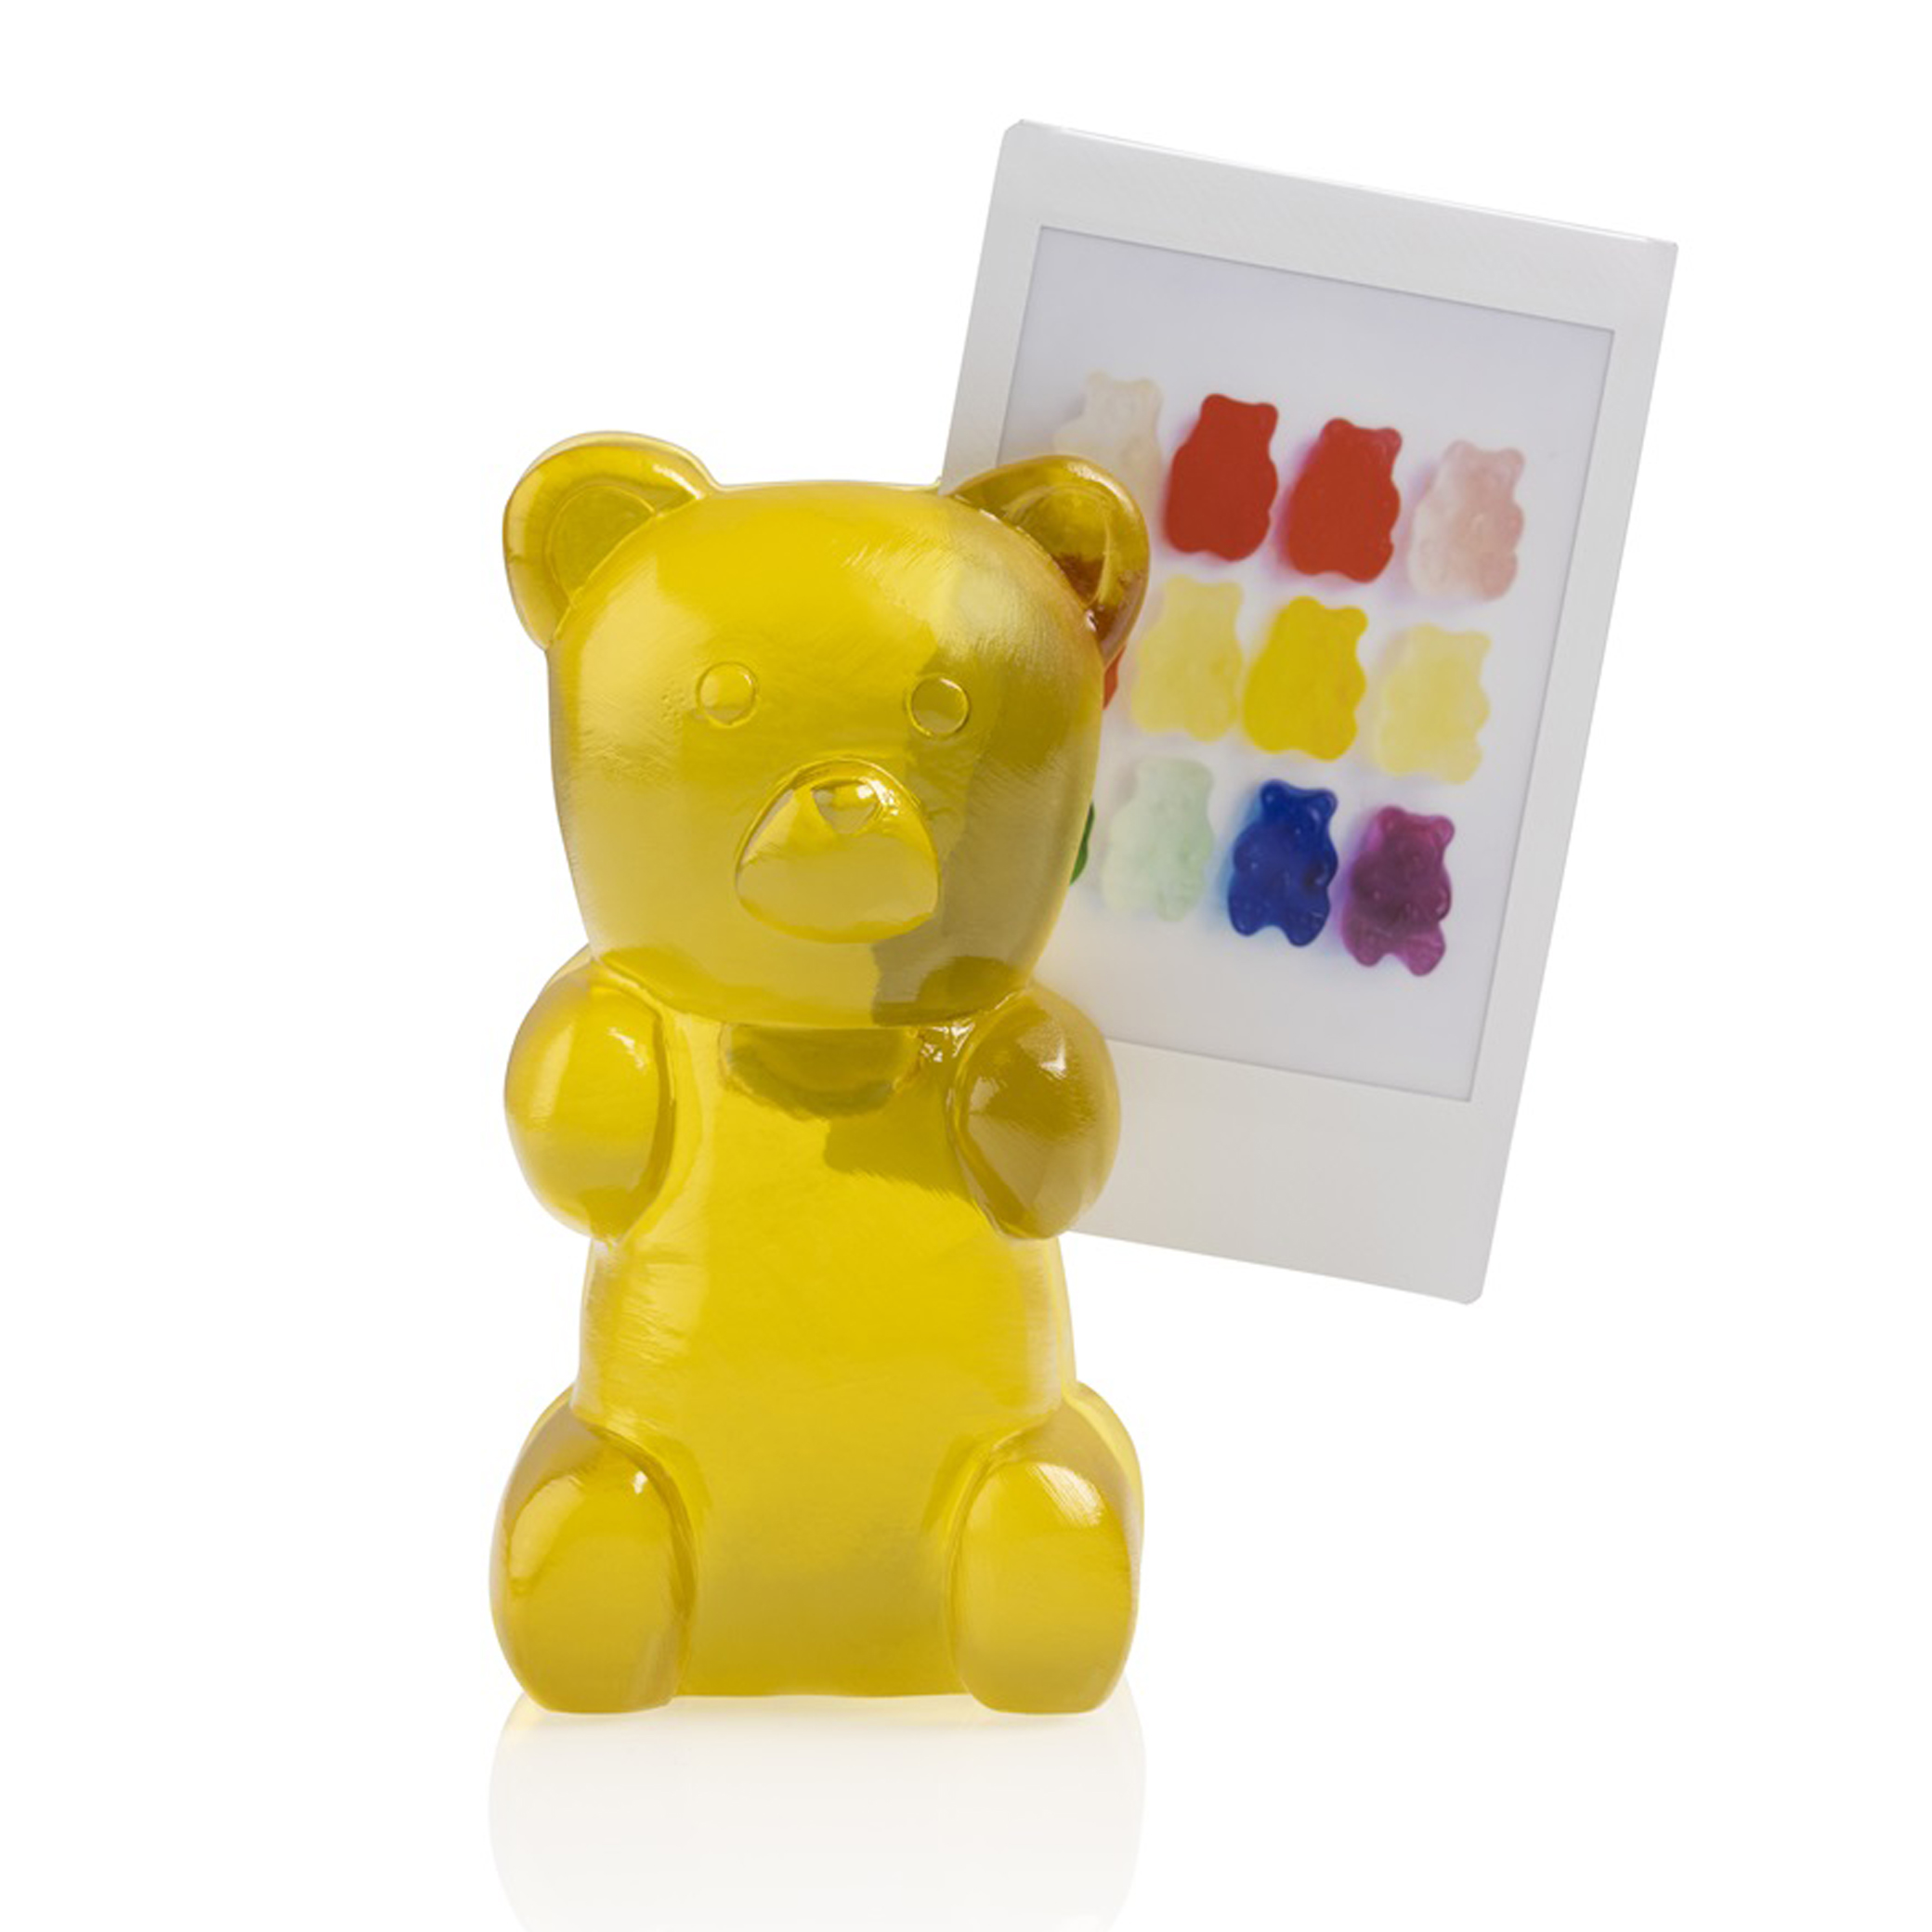 bitten-design-candy-bear-photo-holder-citrus-yellow